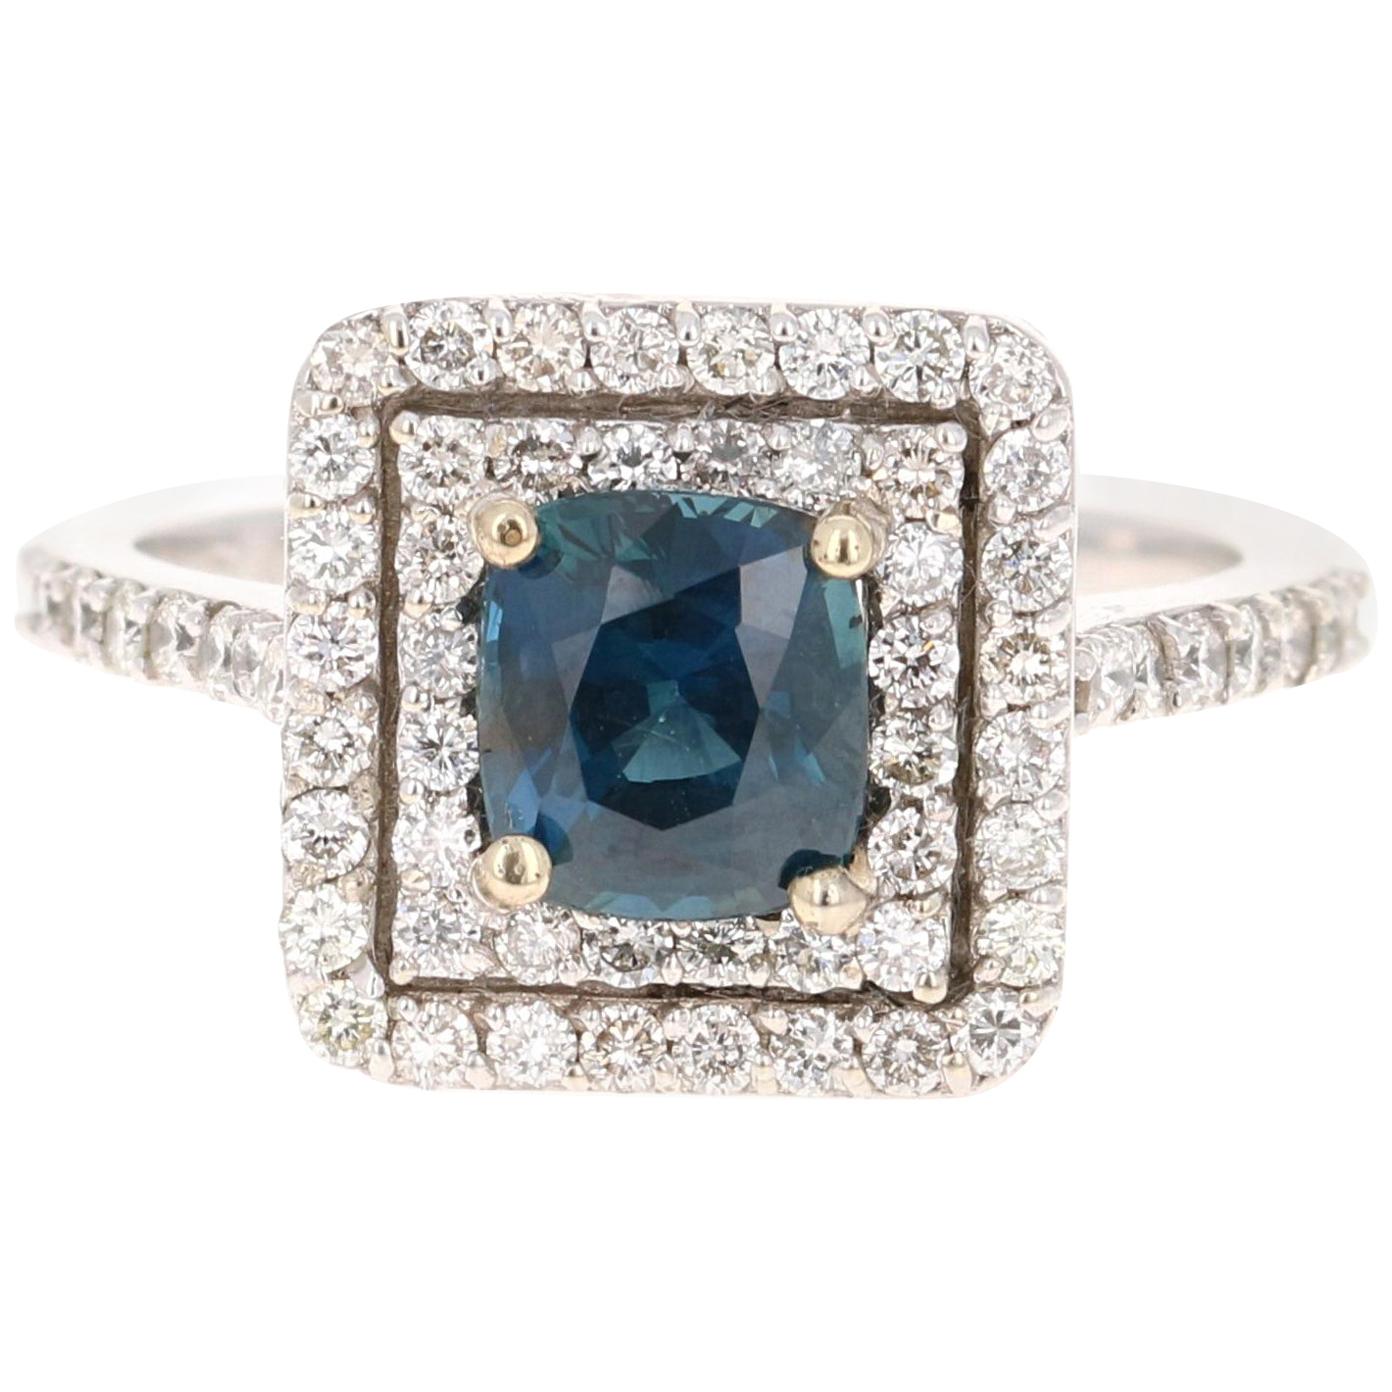 2.29 Carat Blue Sapphire Diamond Engagement Ring 14 Karat White Gold Ring